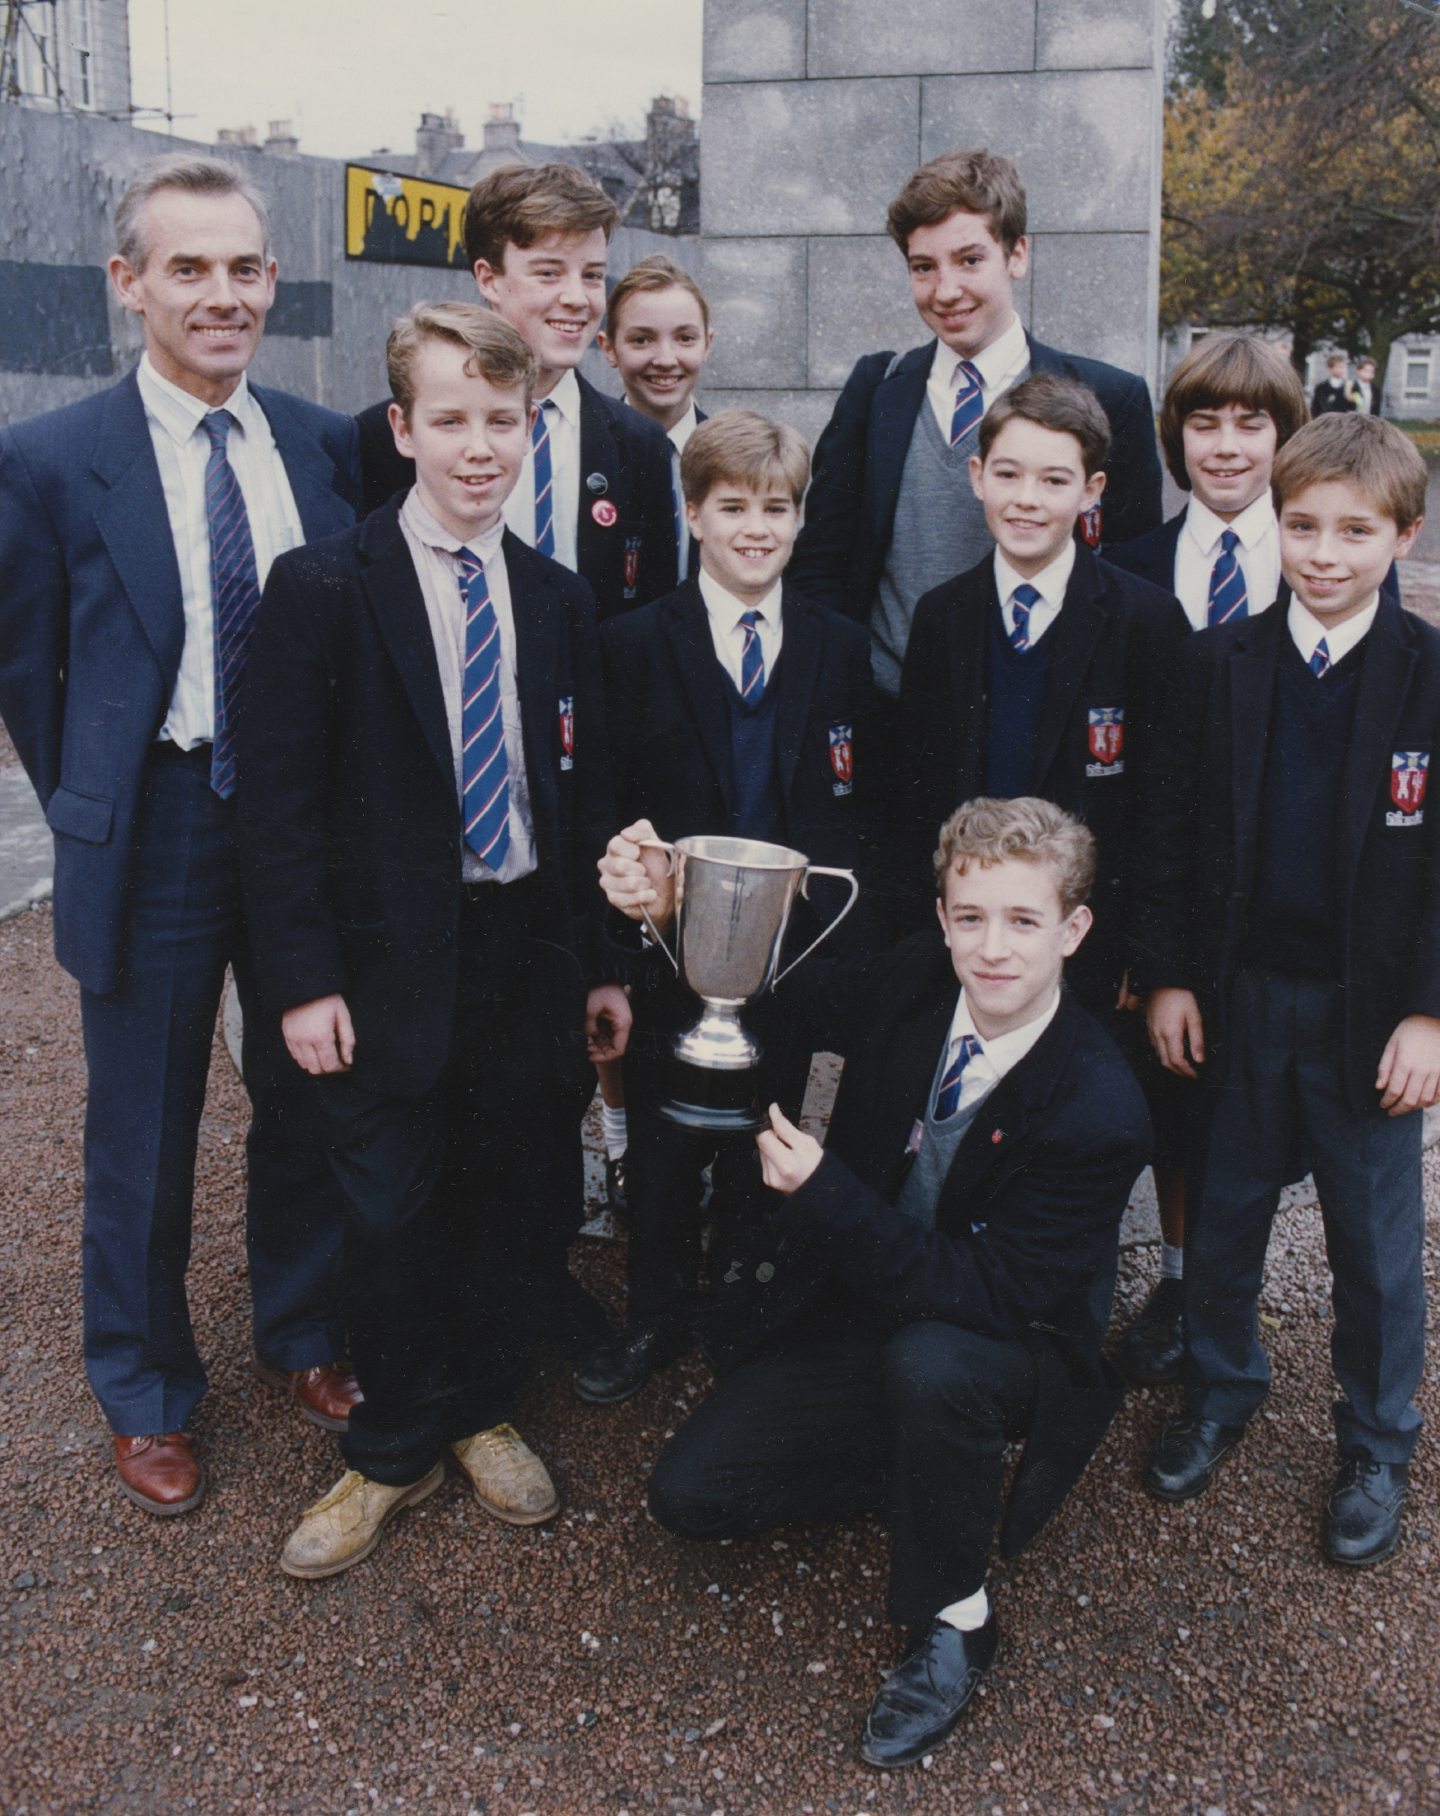 Aberdeen Grammar School's chess team holds up the Scottish jamboree team championship trophy in 1990.